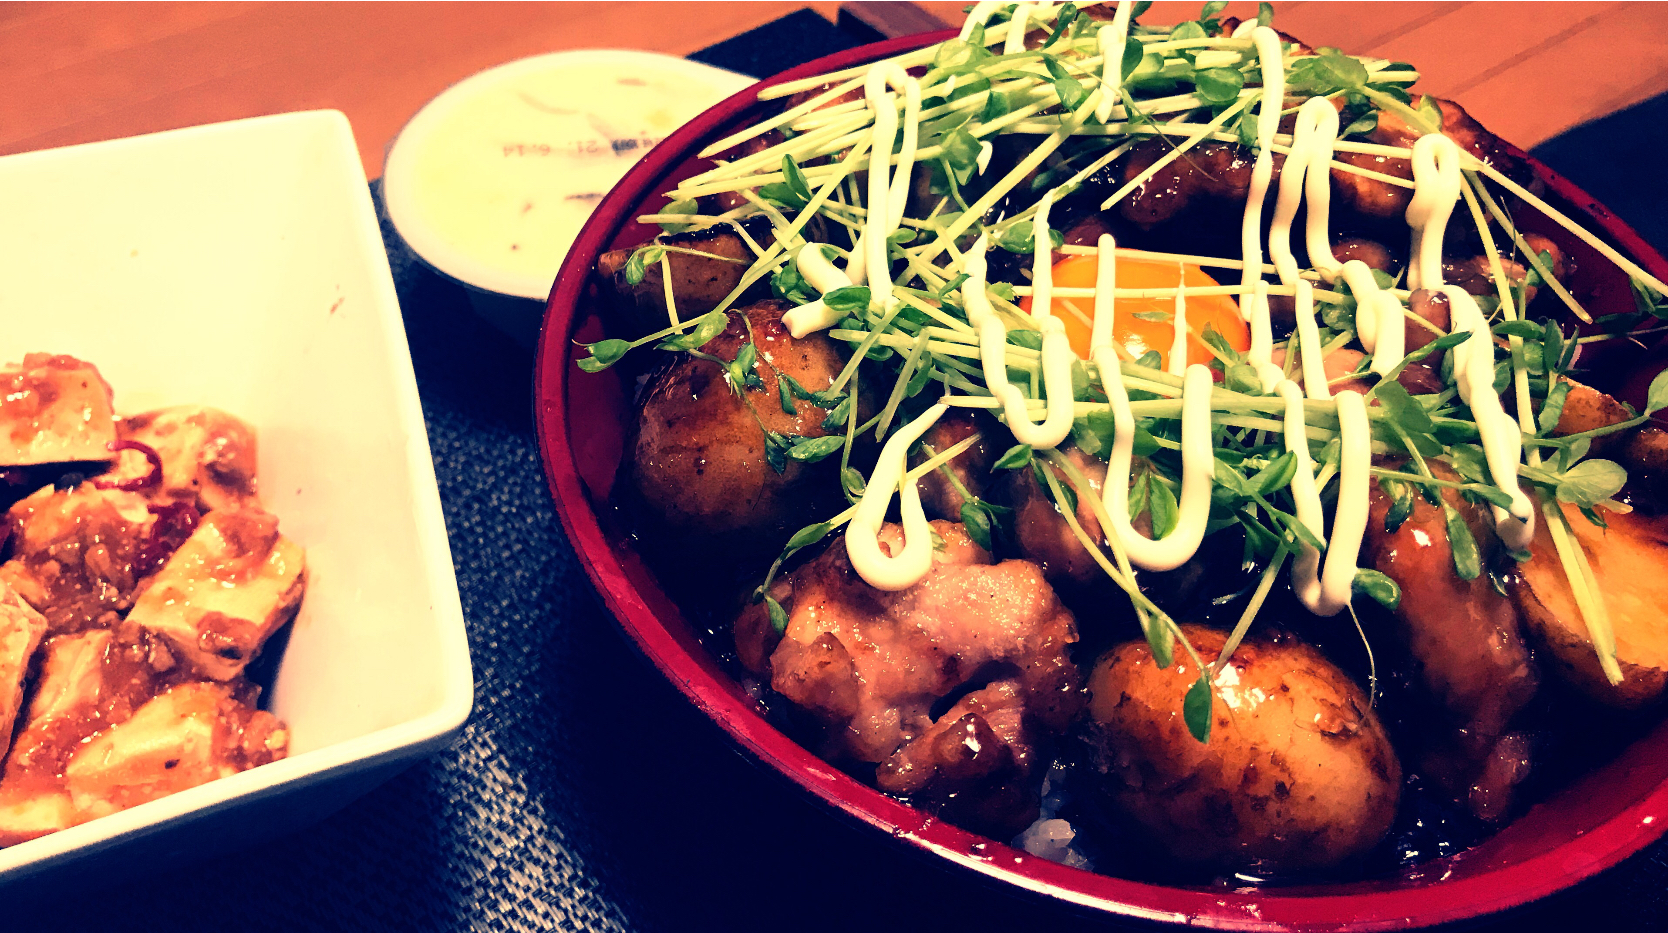 照り焼きチキン丼 麻婆豆腐 たまご料理グランプリ21 ヤマサ醤油株式会社